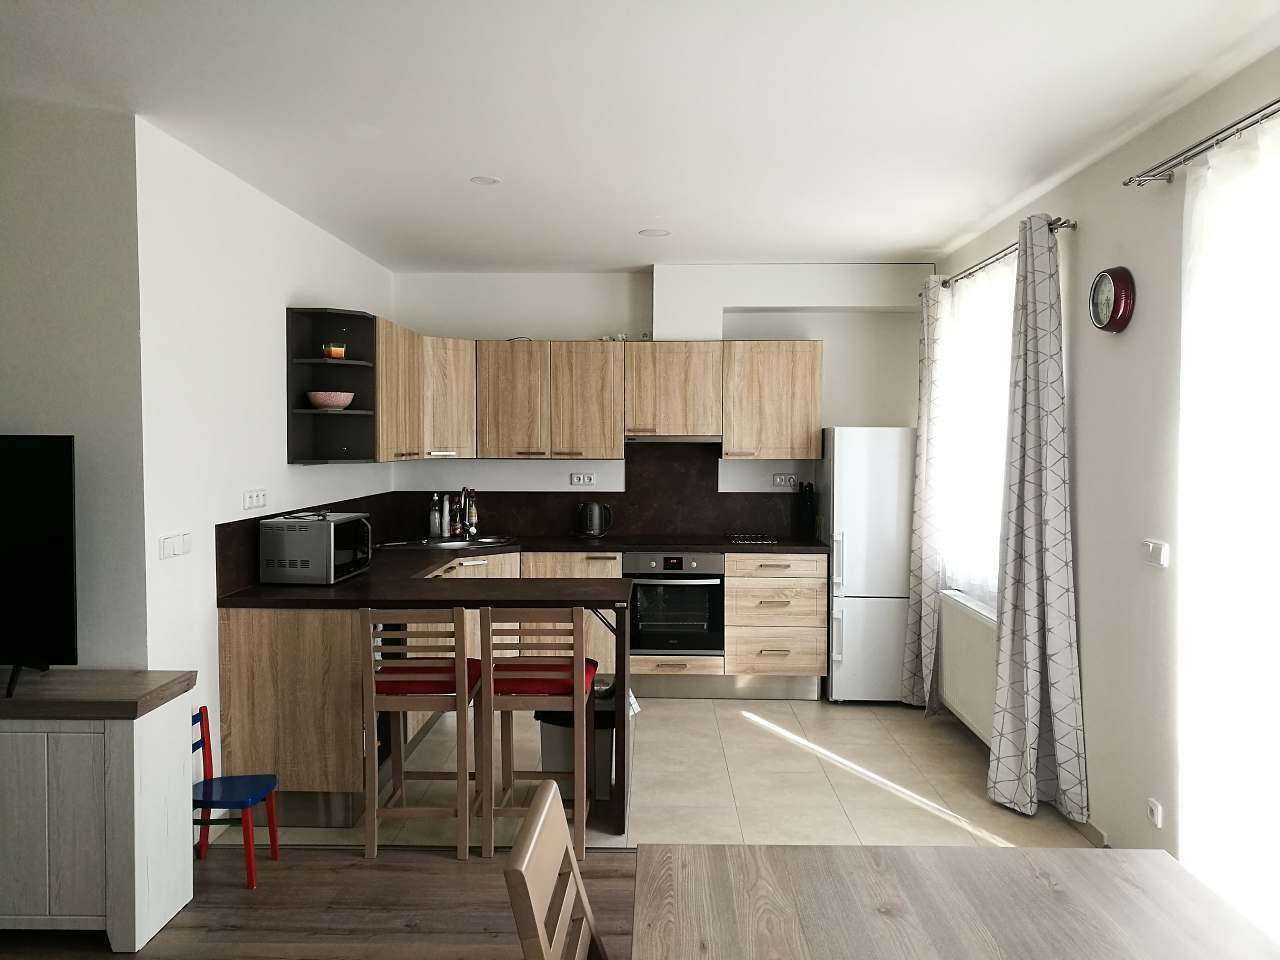 Kuchyň s obývákem